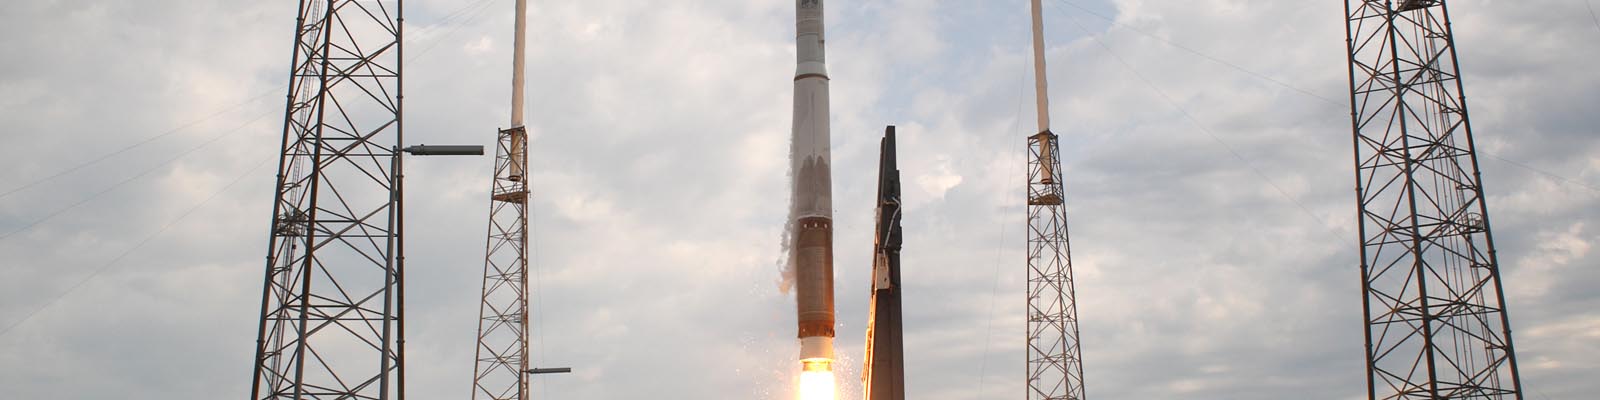 Lancement de la sonde LRO par la fusée Atlas V